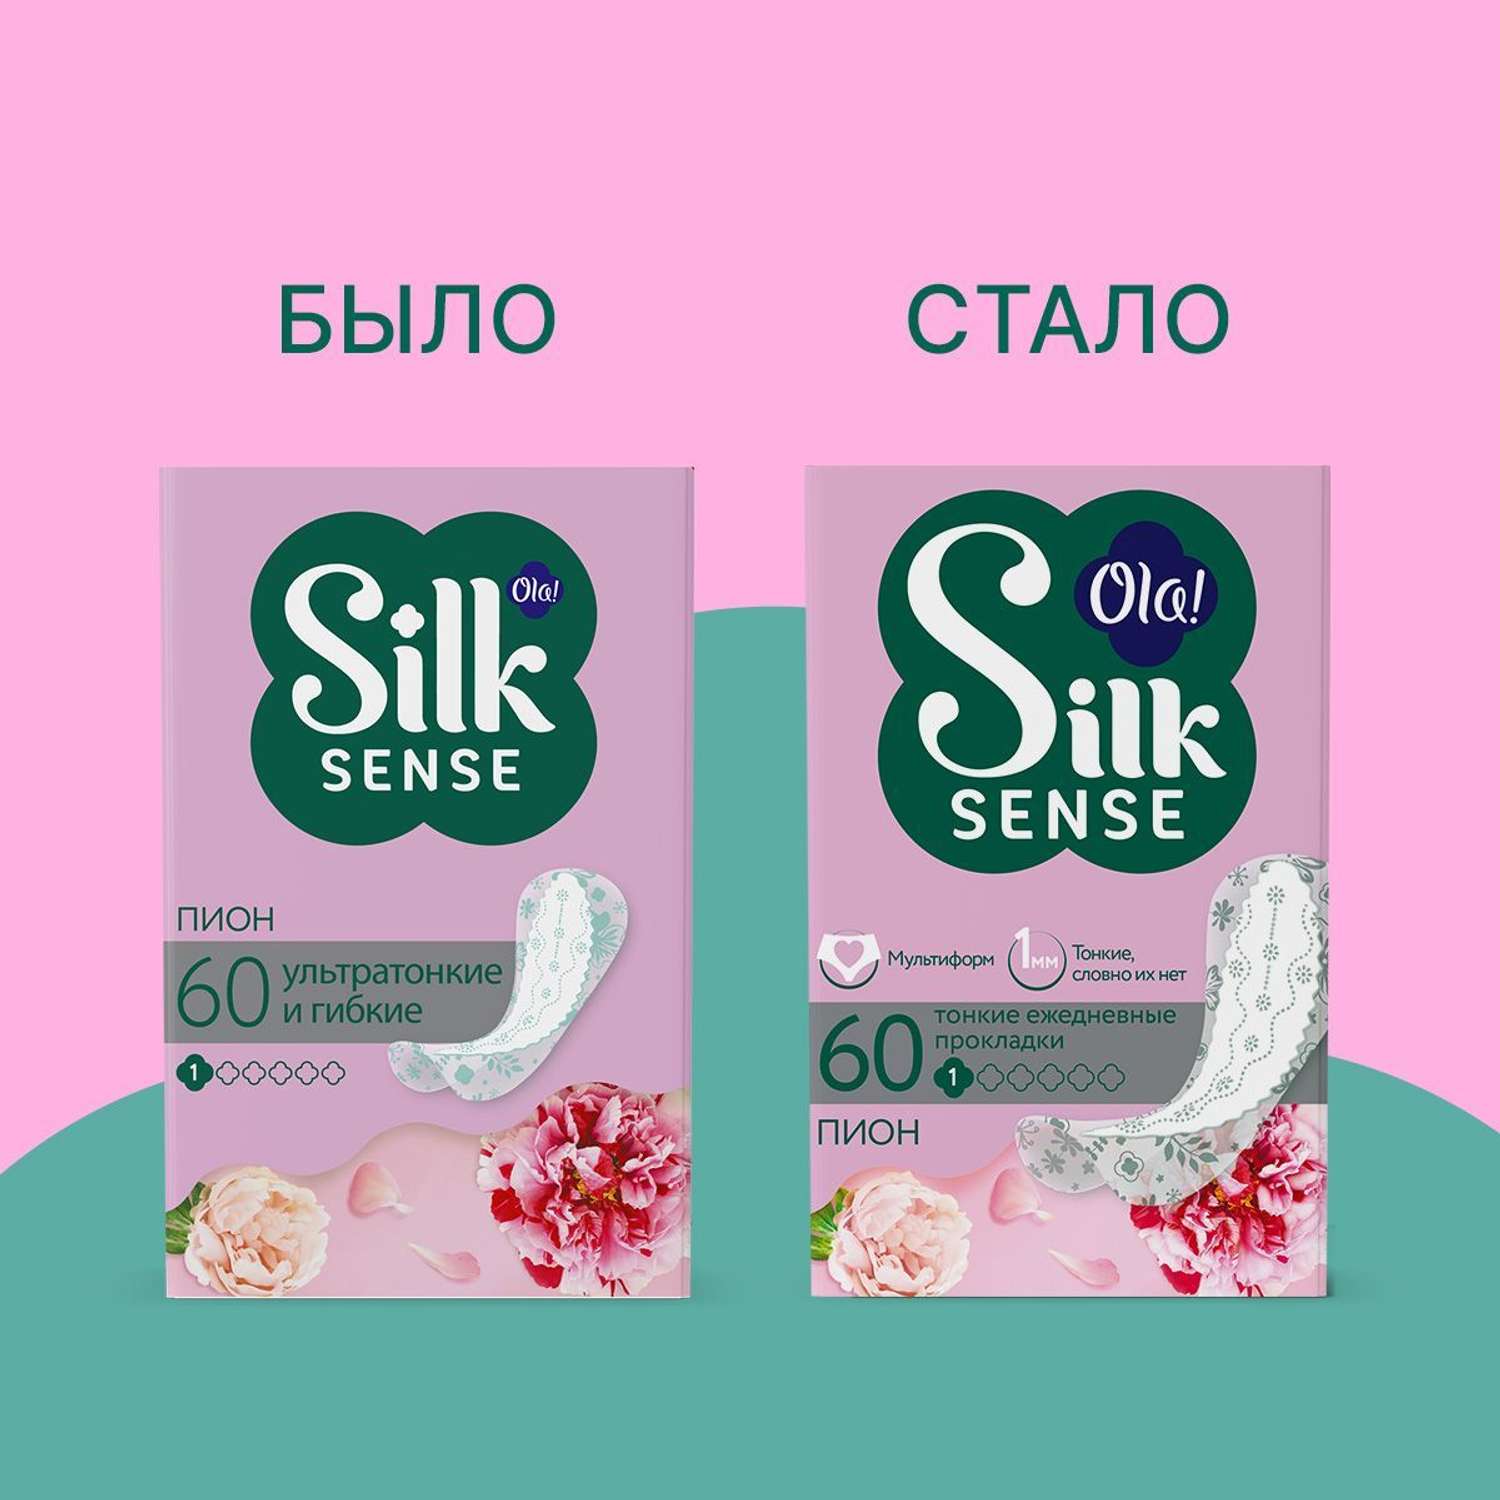 Ежедневные прокладки Ola! Silk Sense Light ультратонкие аромат Белый пион 60 шт - фото 3